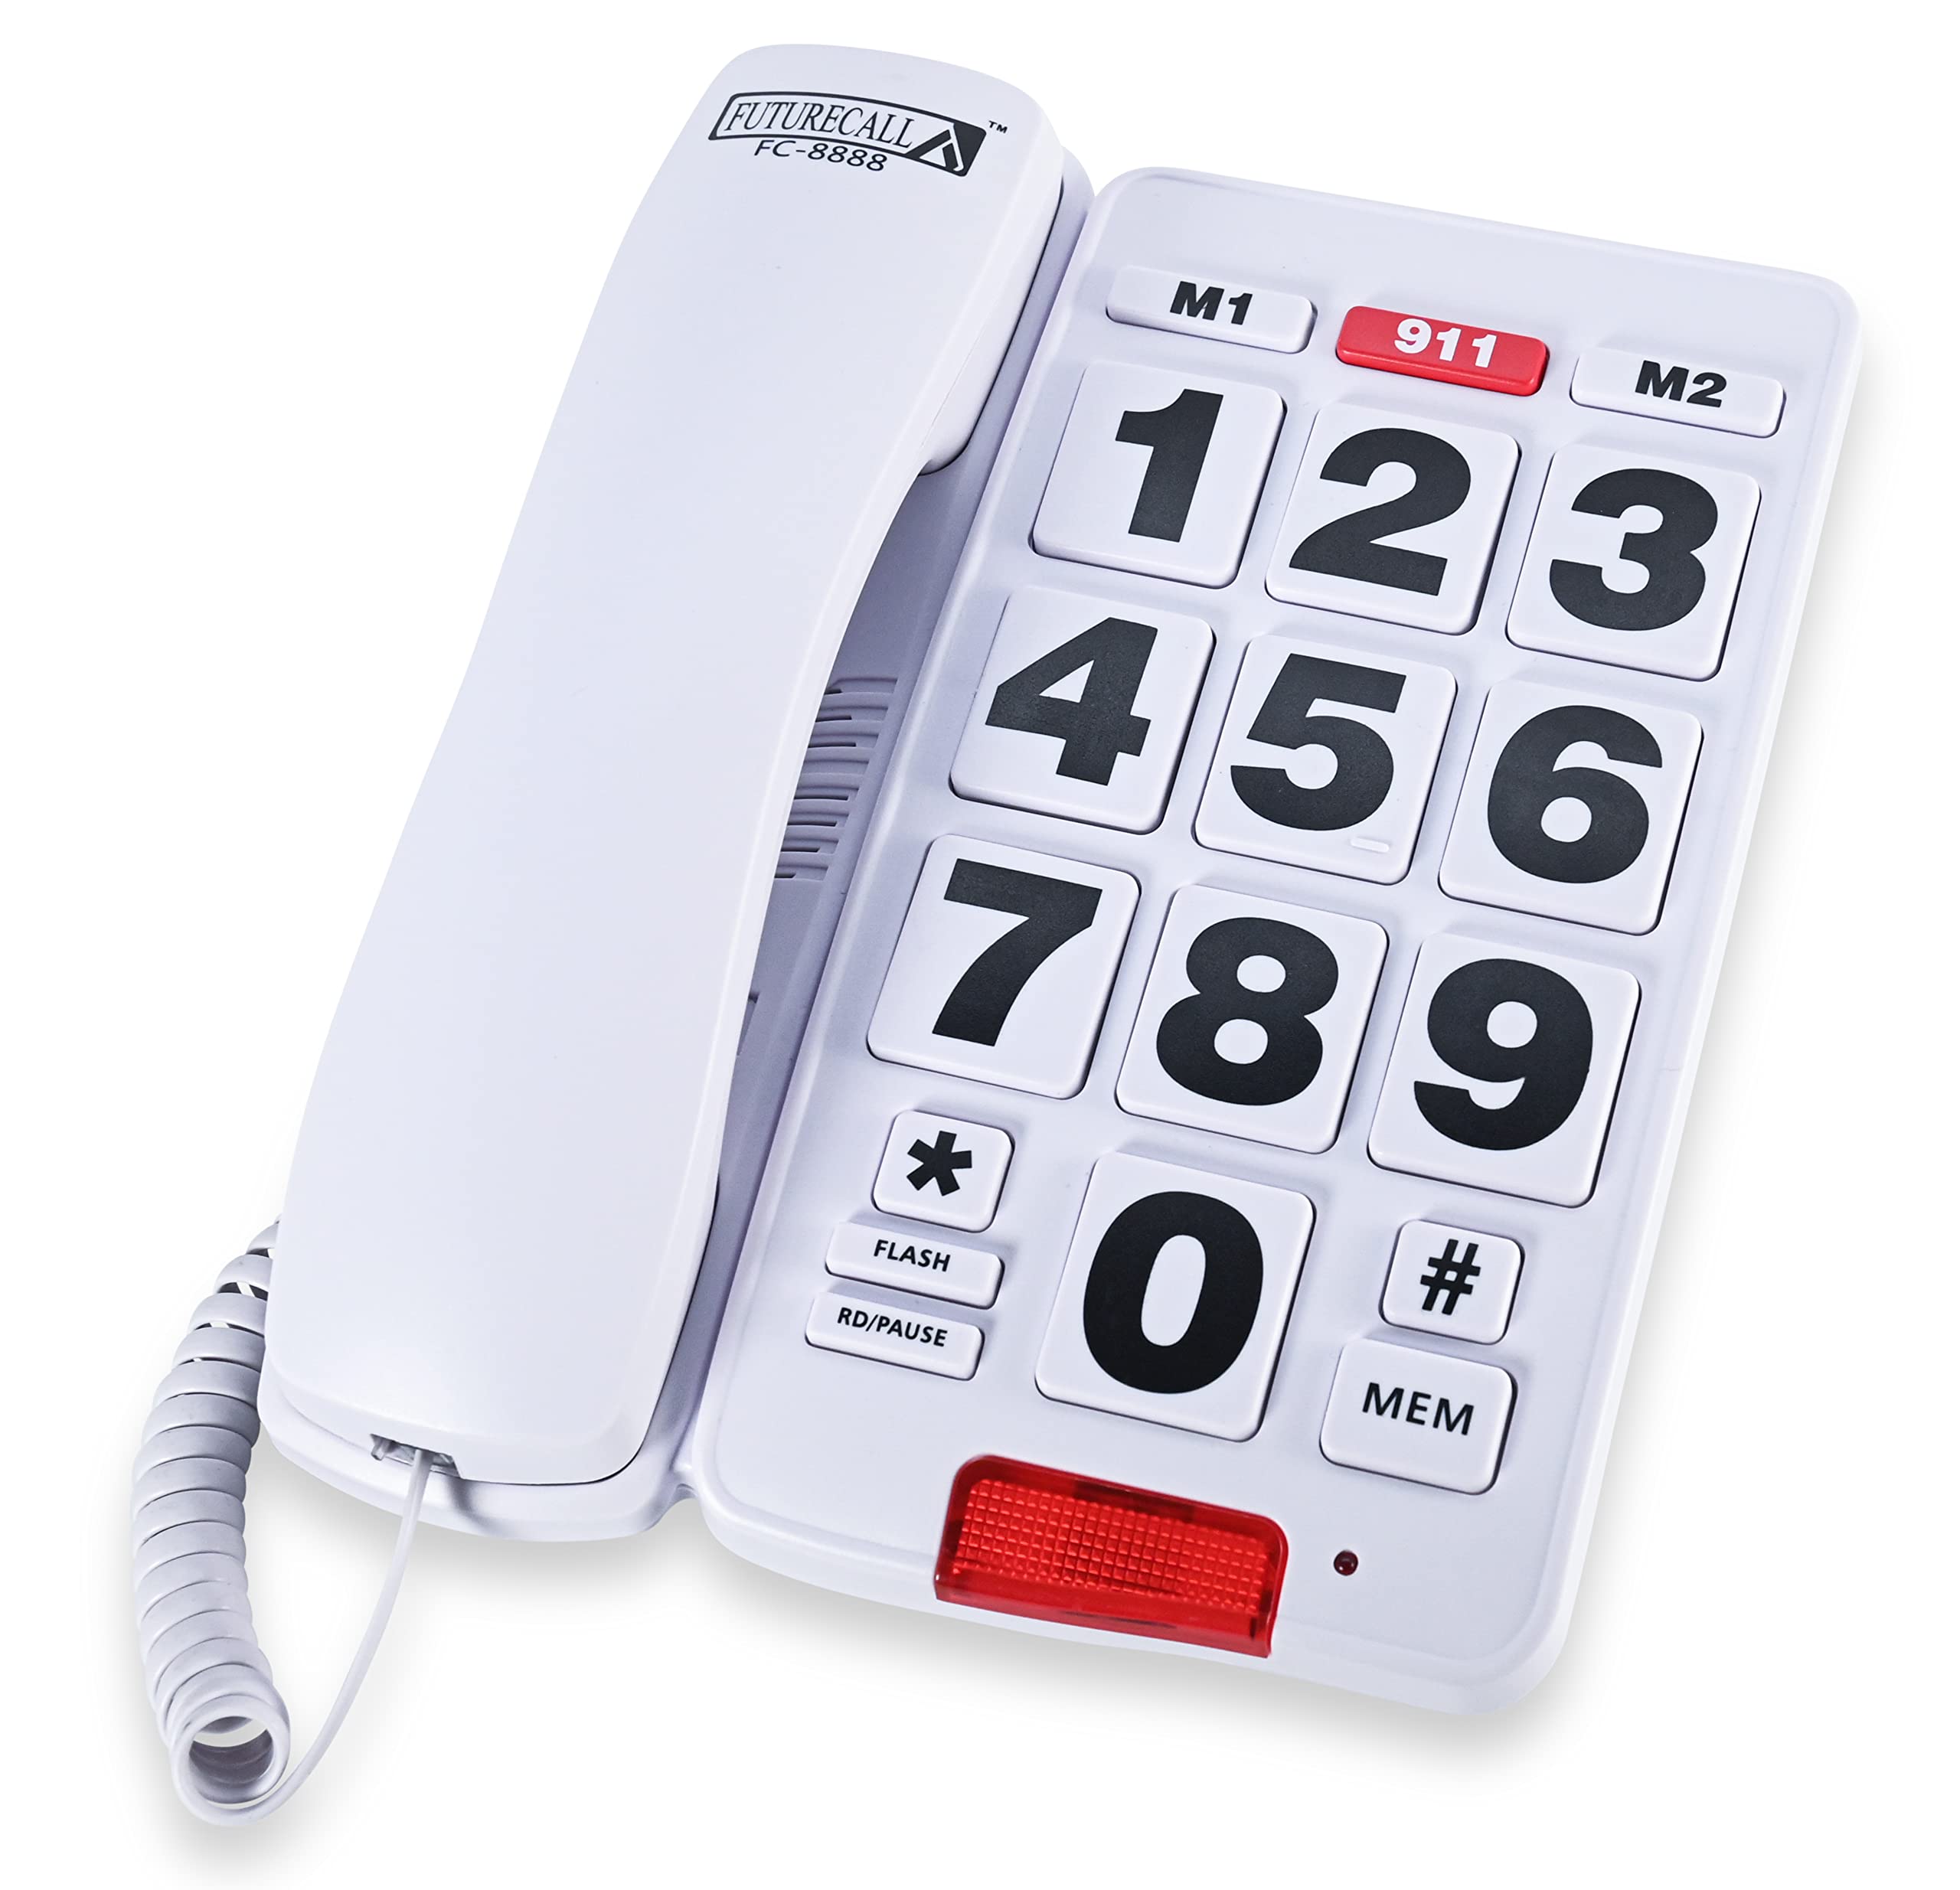 landline telephones for seniors